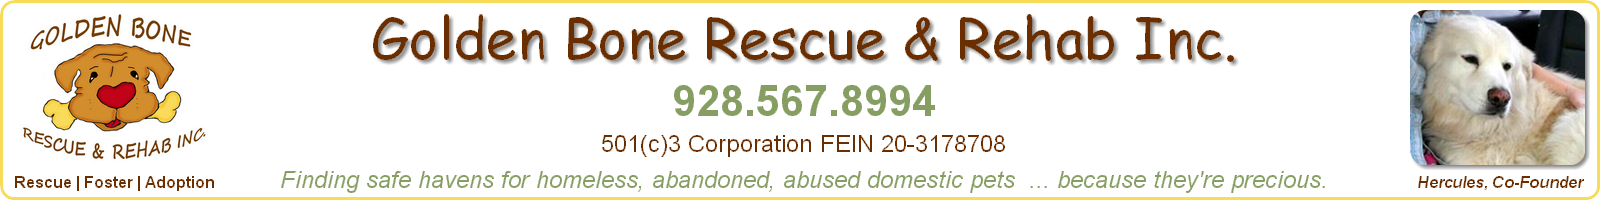 Golden Bone Rescue & Rehab Inc.